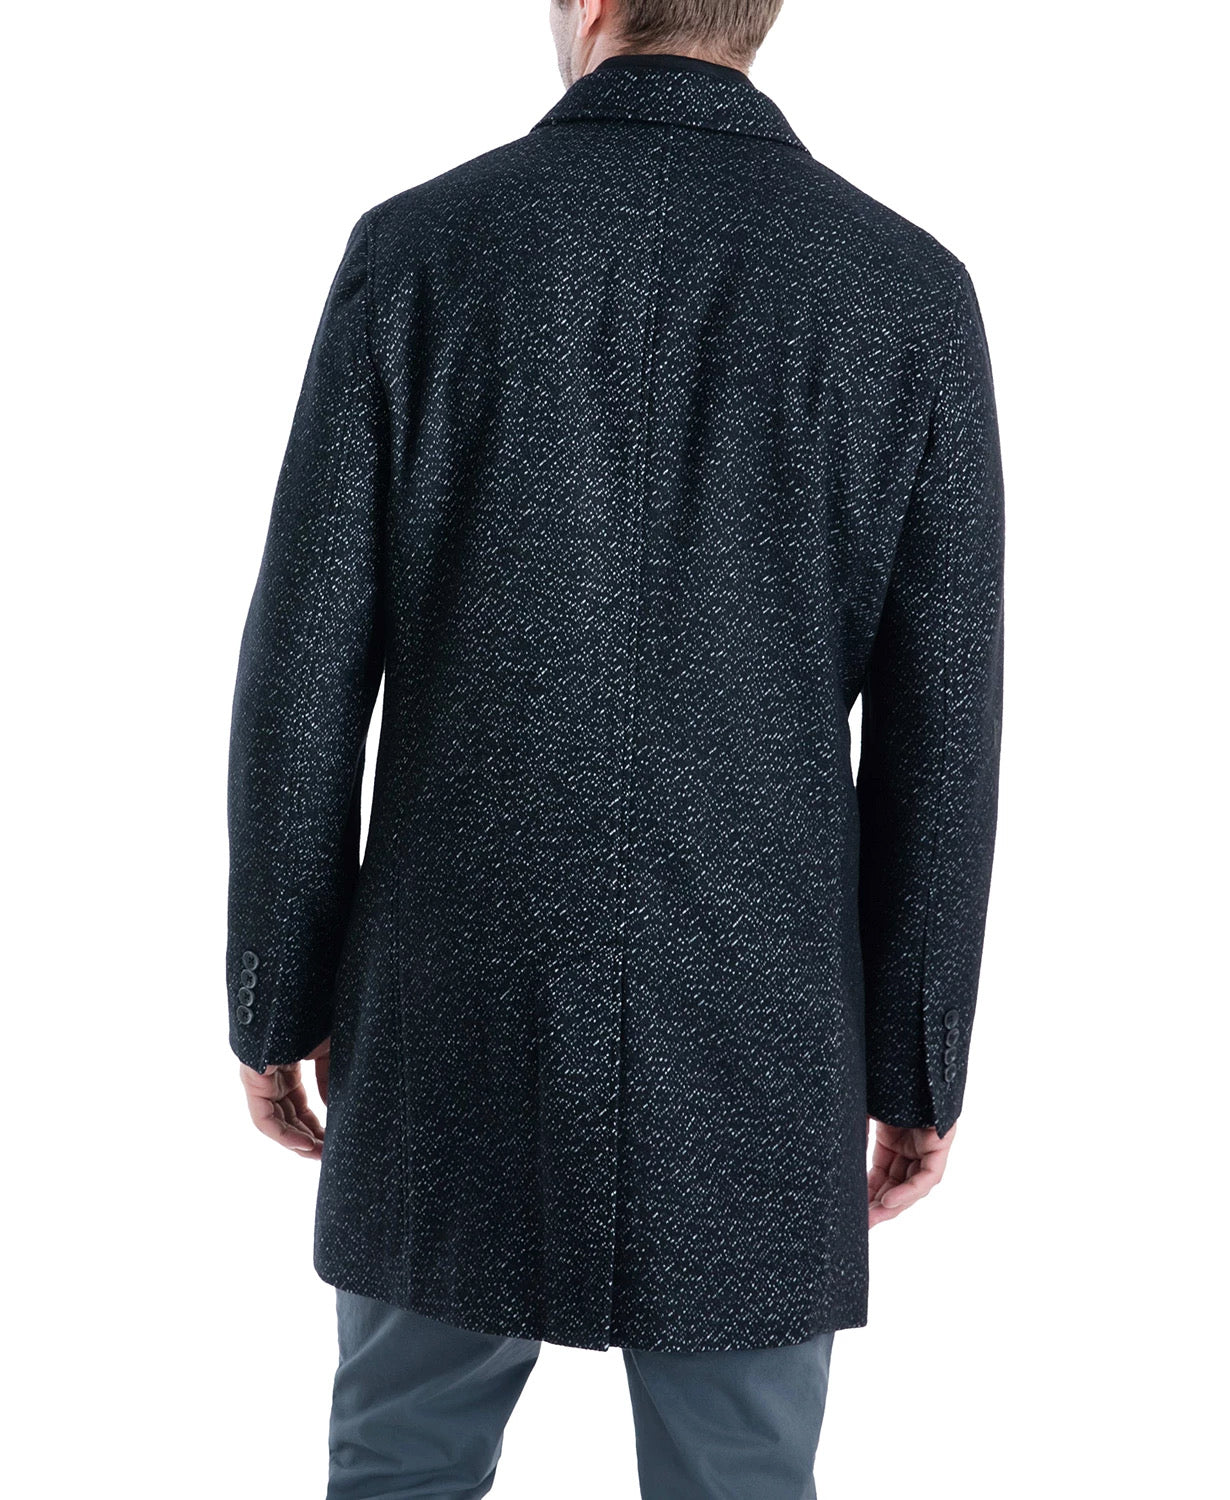 Michael Kors Men's Pike Slim Fit Top Coat 42R Black / White Overcoat